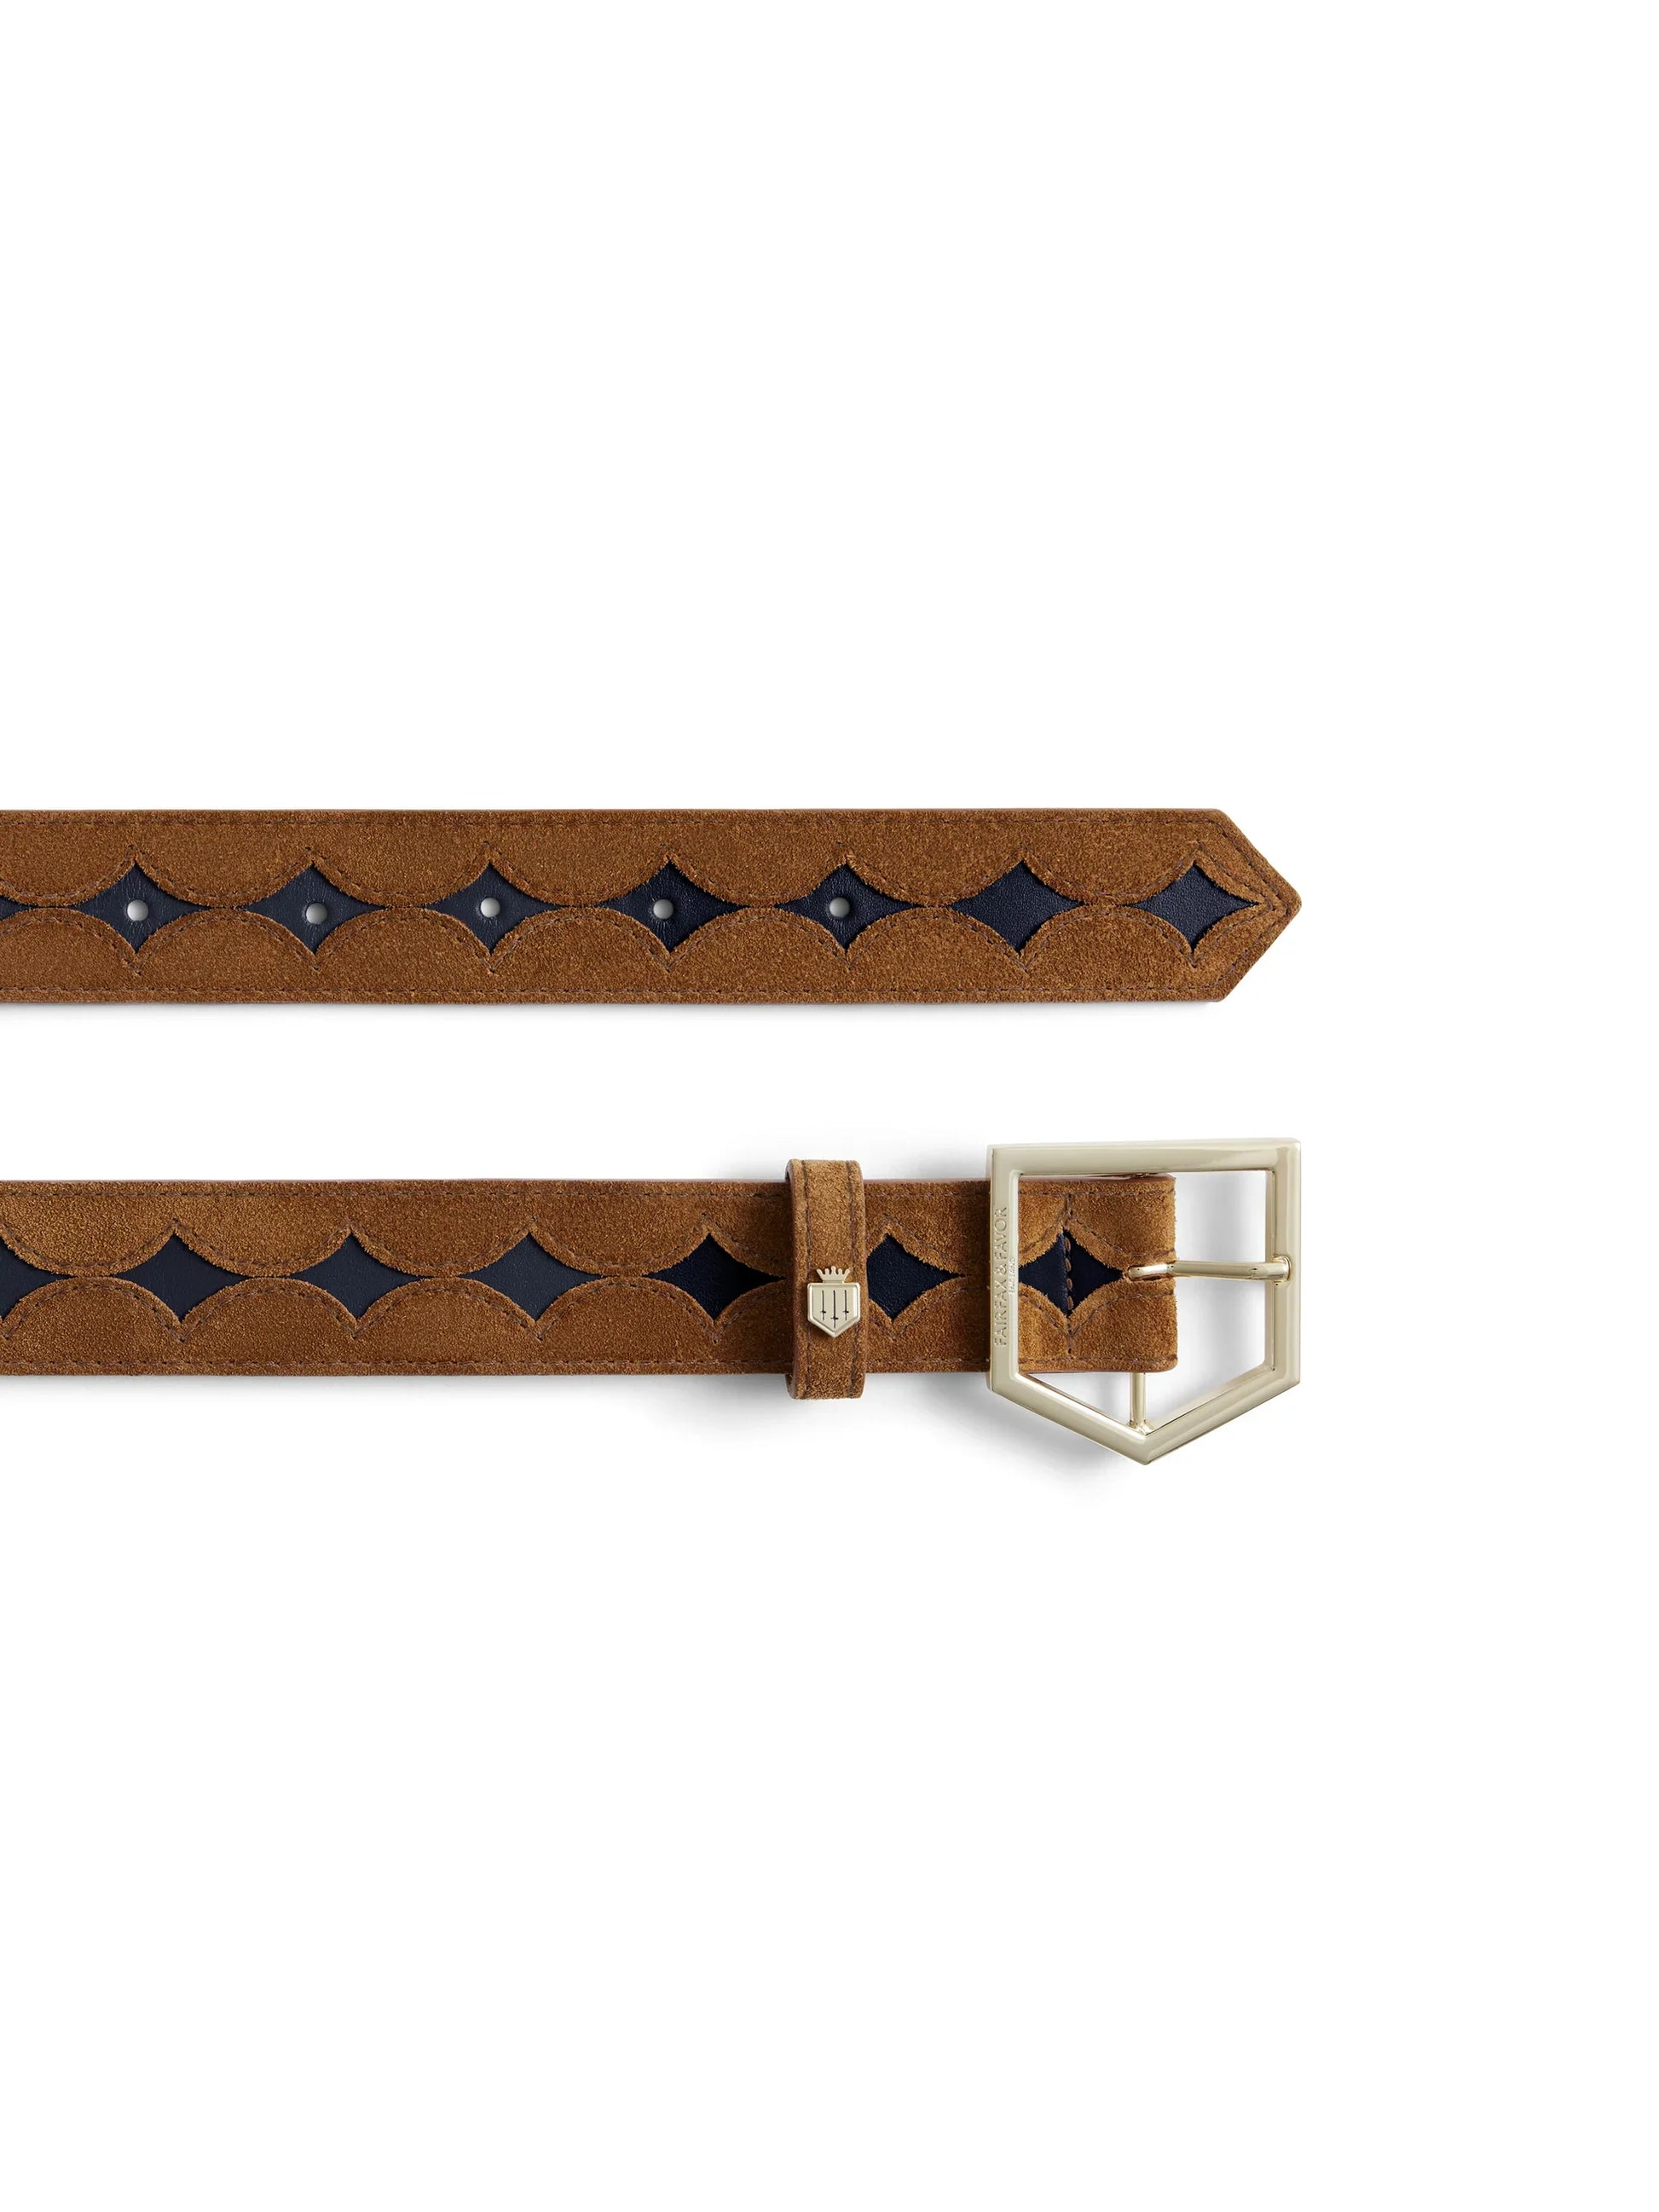 Ohio belt - tan / navy leather Belts FAIRFAX & FAVOR